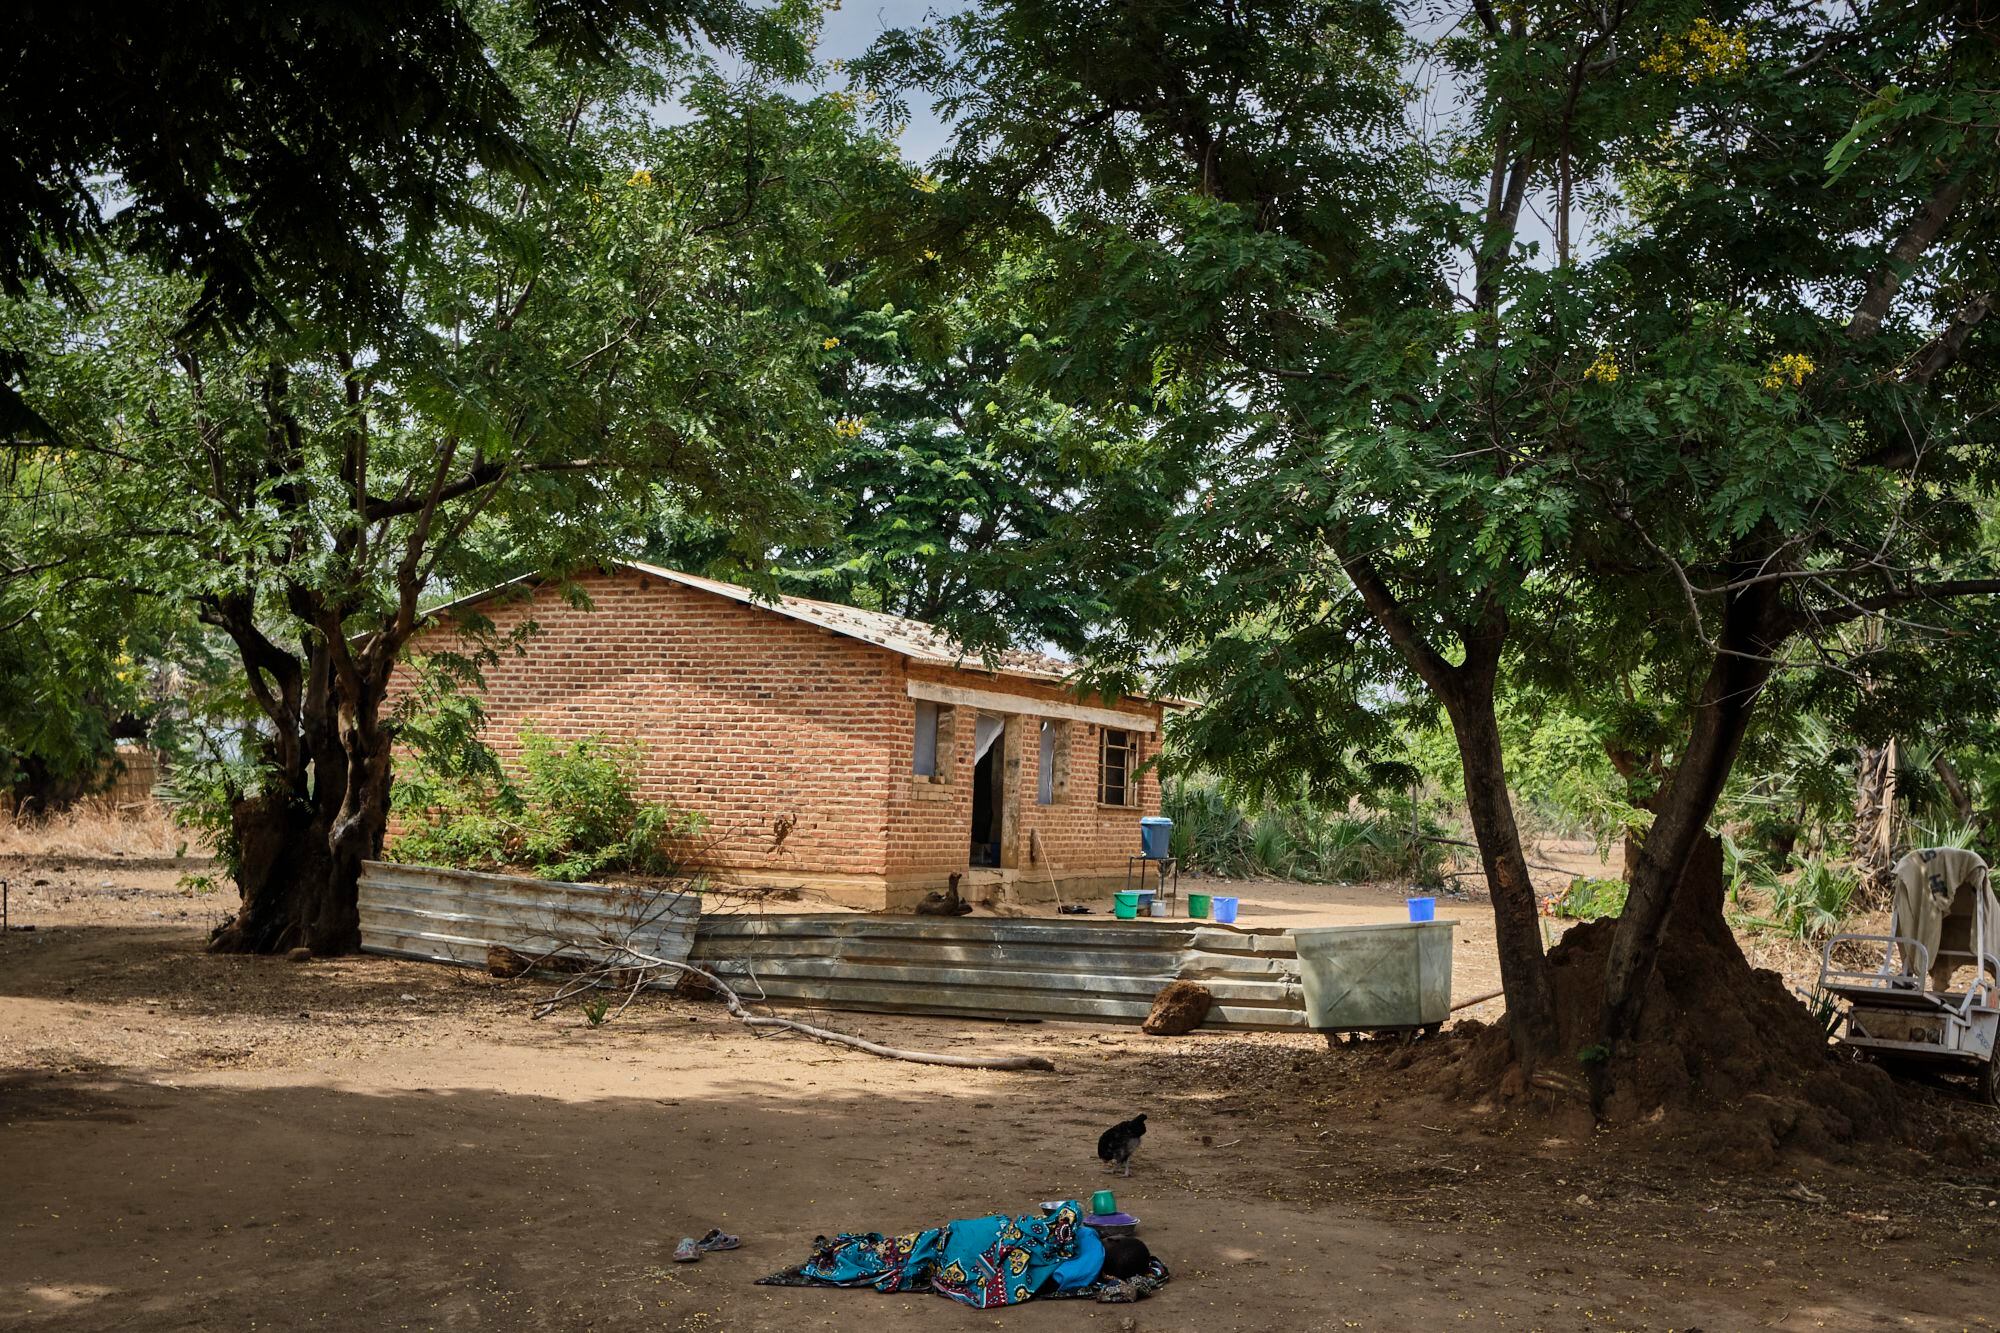 Una niña enferma de cólera descansa cerca del centro de salud de Mtosa, en el distrito de Nkhotakota, Malaui. Este distrito es el que más muertes por cólera ha registrado desde el inicio del brote en marzo de 2022. Hasta ahora, se han detectado 1.044 casos y 47 muertes. Al fondo, el edificio improvisado para los pacientes enfermos de cólera.